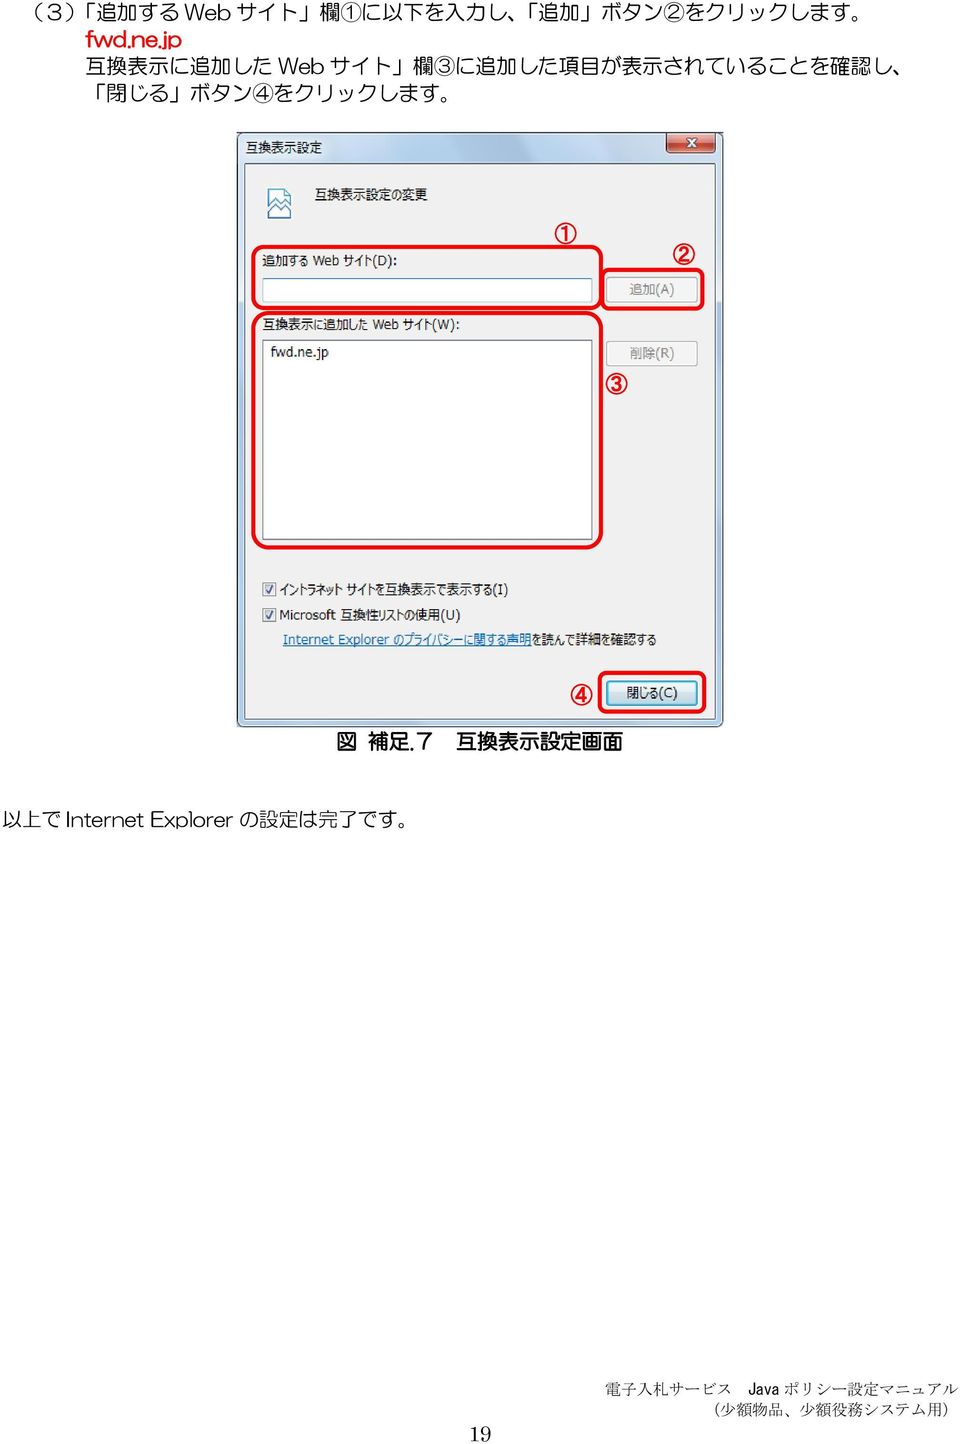 jp 互 換 表 示 に 追 加 した Web サイト 欄 3に 追 加 した 項 目 が 表 示